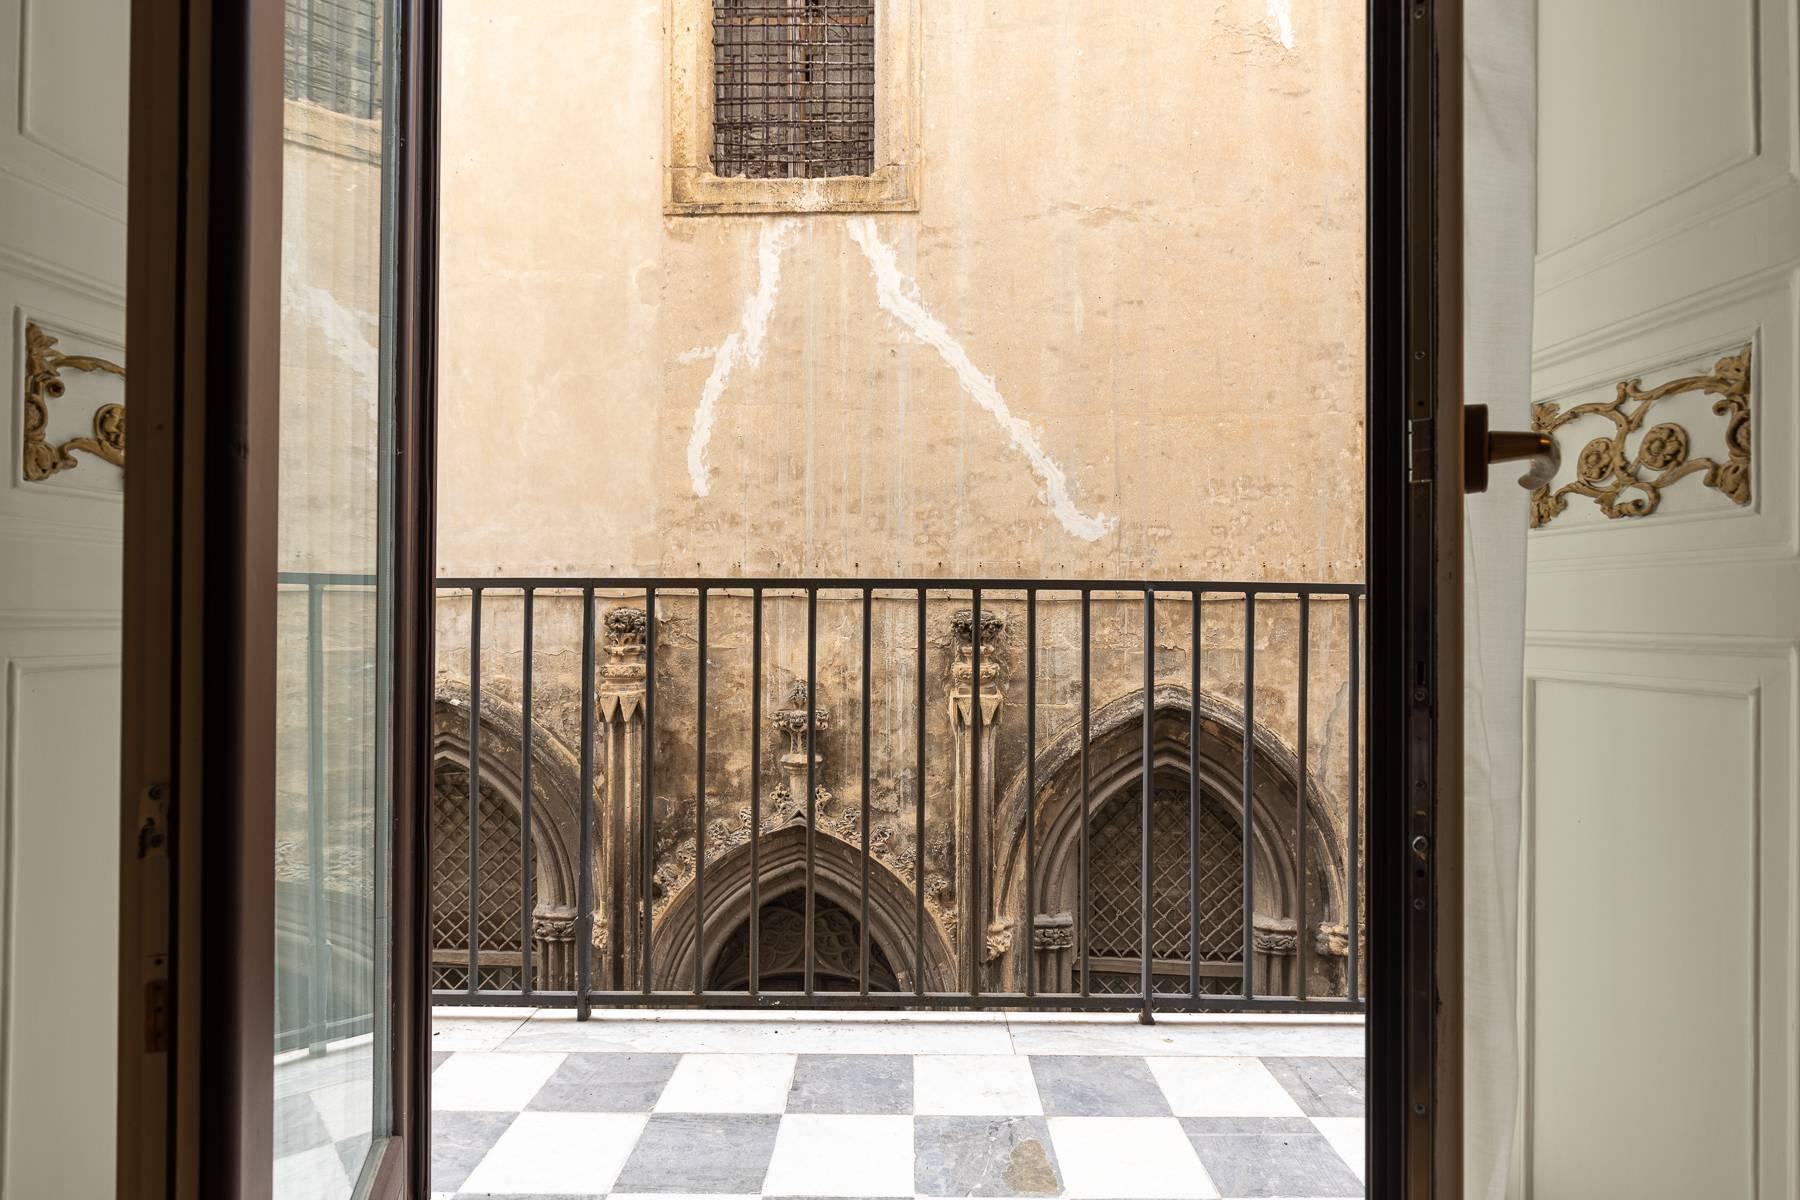 Piano nobile in centro storico a Palermo - 22